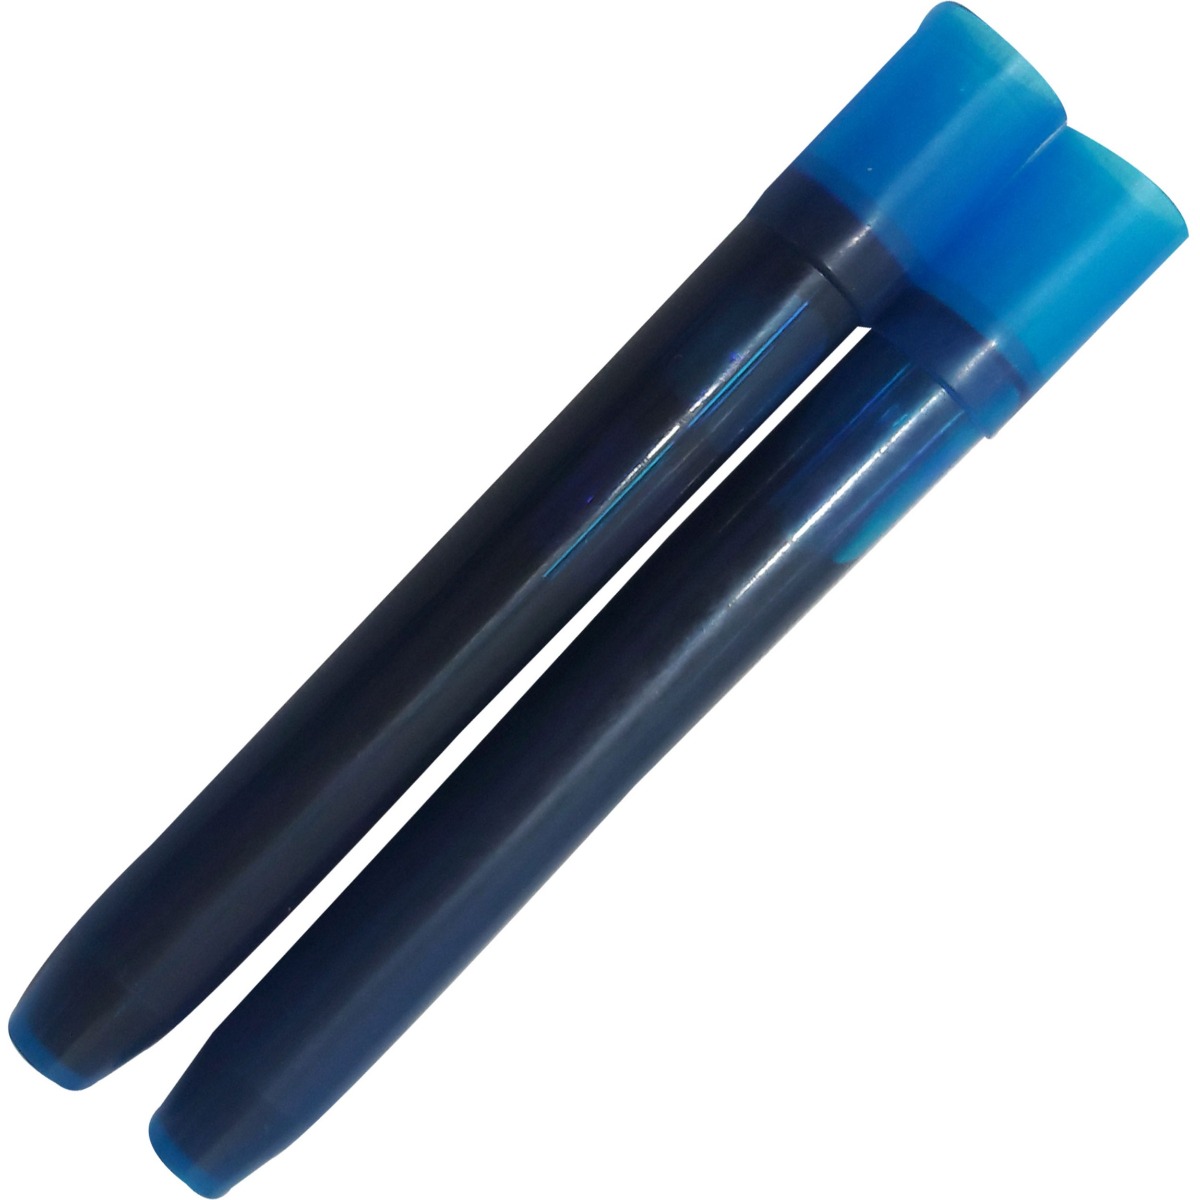 Pilot Model: 70543 V7 Hi Tech Transparent body  Blue ink with a set of 2 ink Cartridge